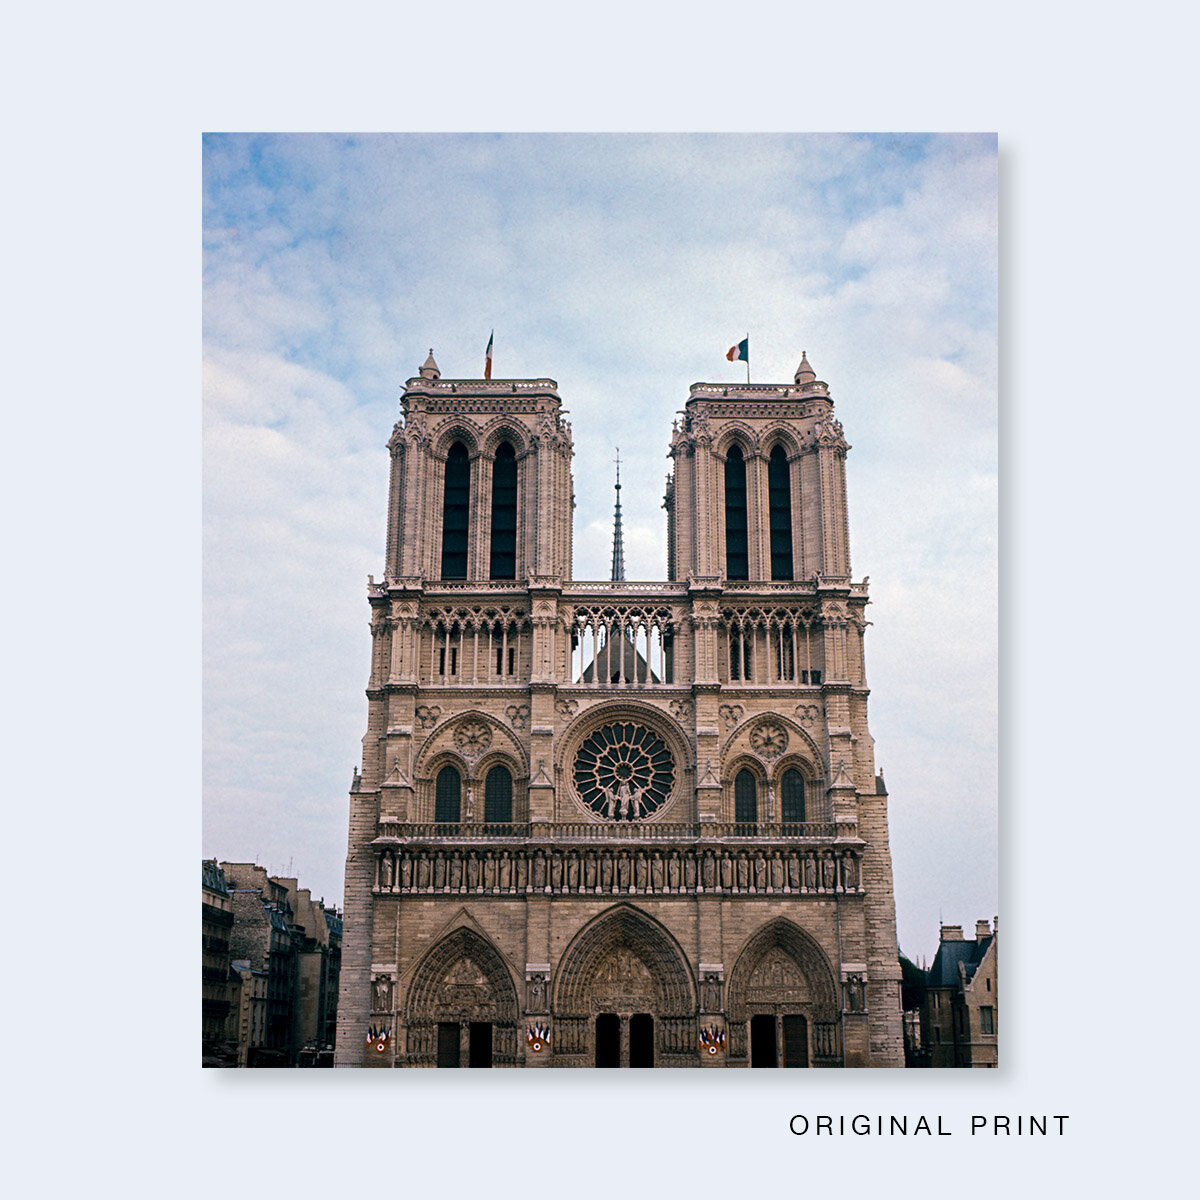 MICHAEL KENNA | One Picture Book Two #17 : Notre-Dame de Paris — Nazraeli  Press